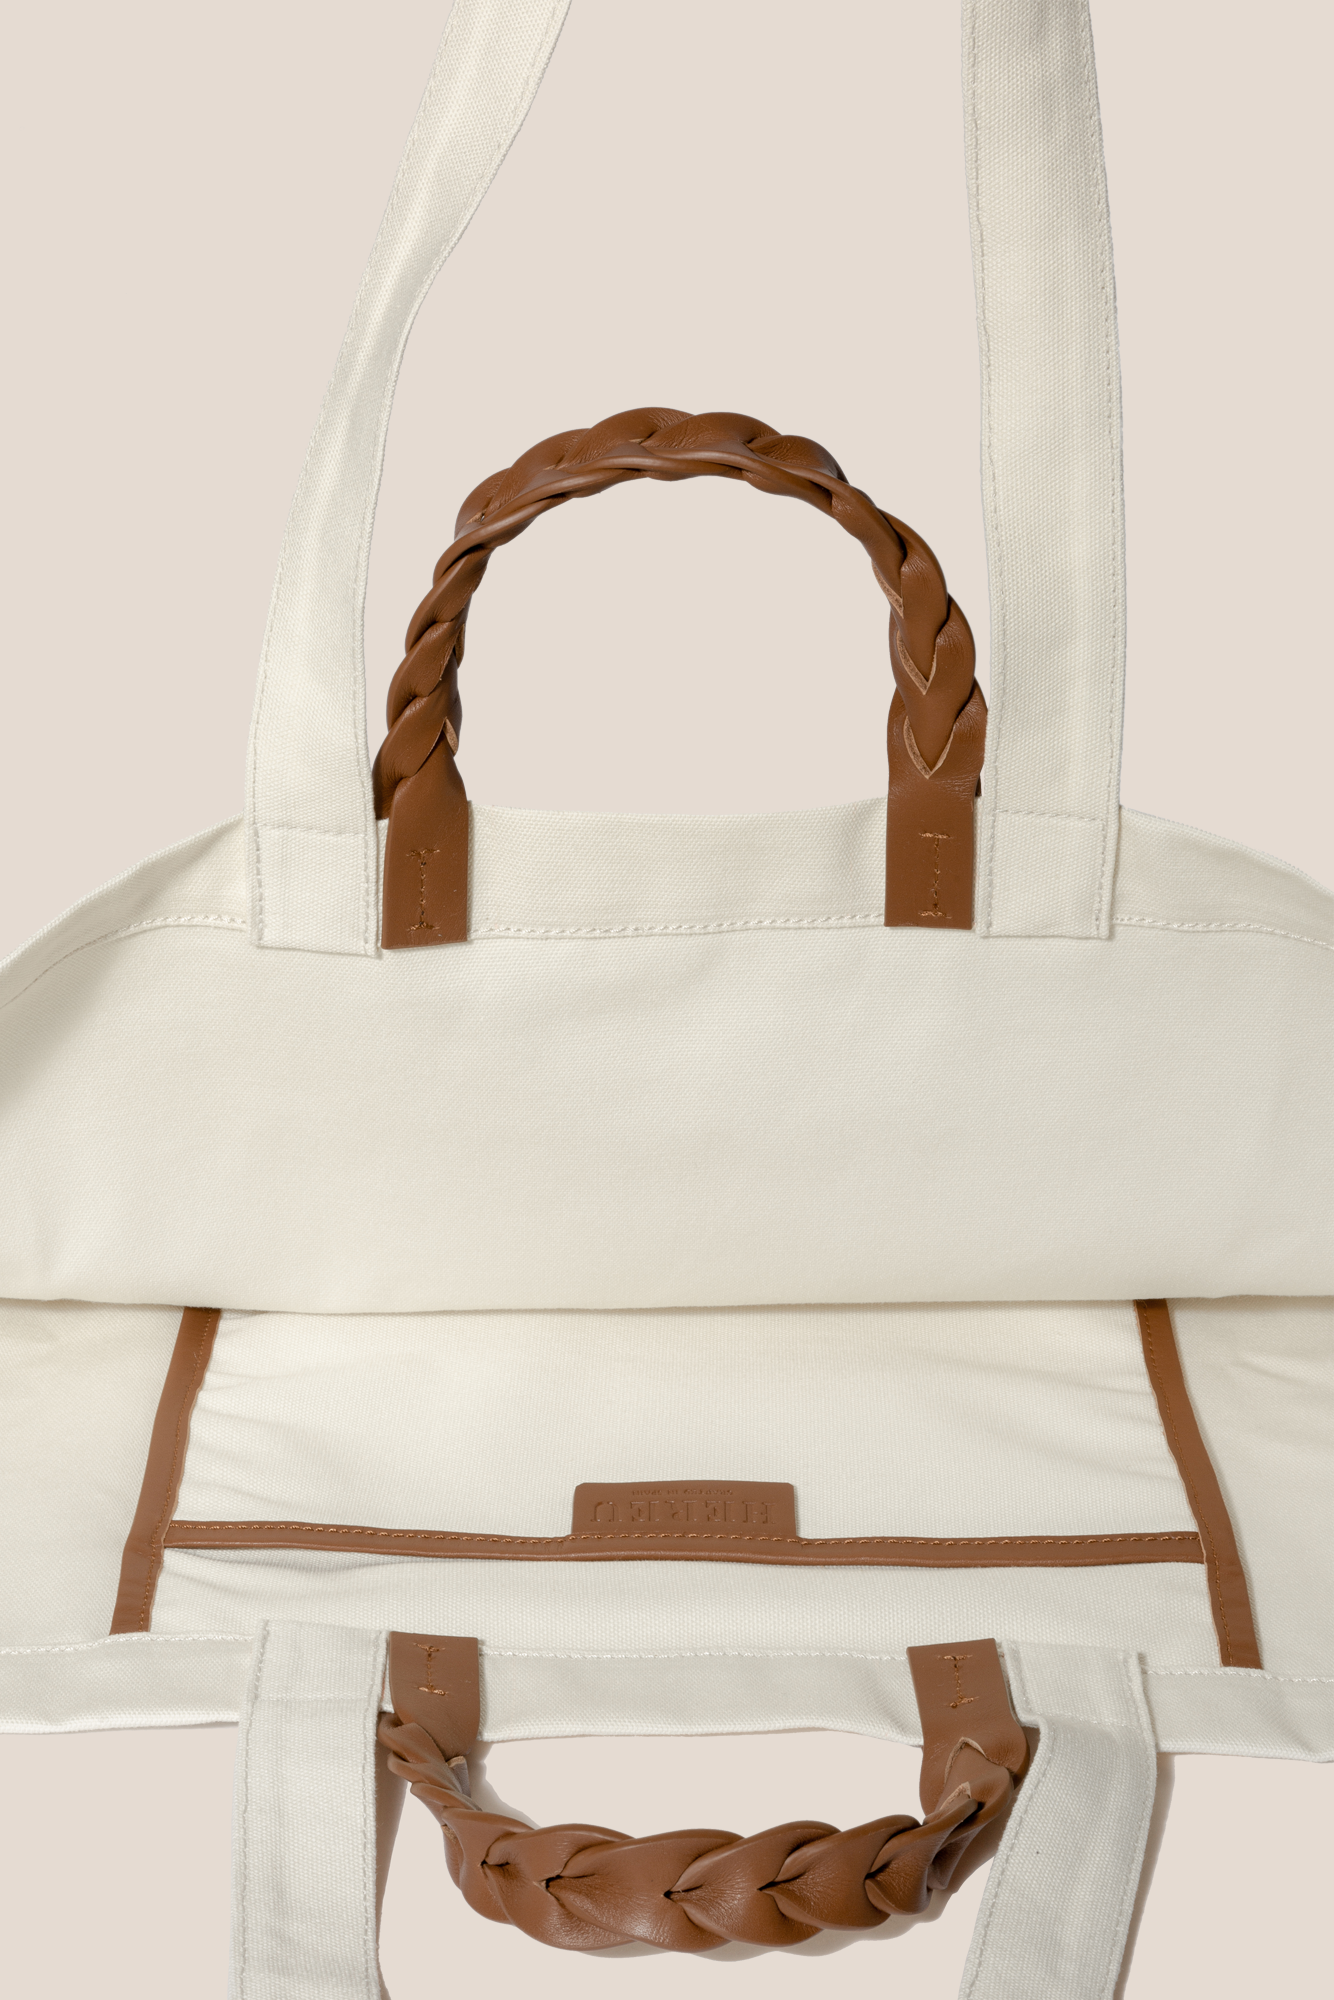 BOSSA - Cotton Tote Bag